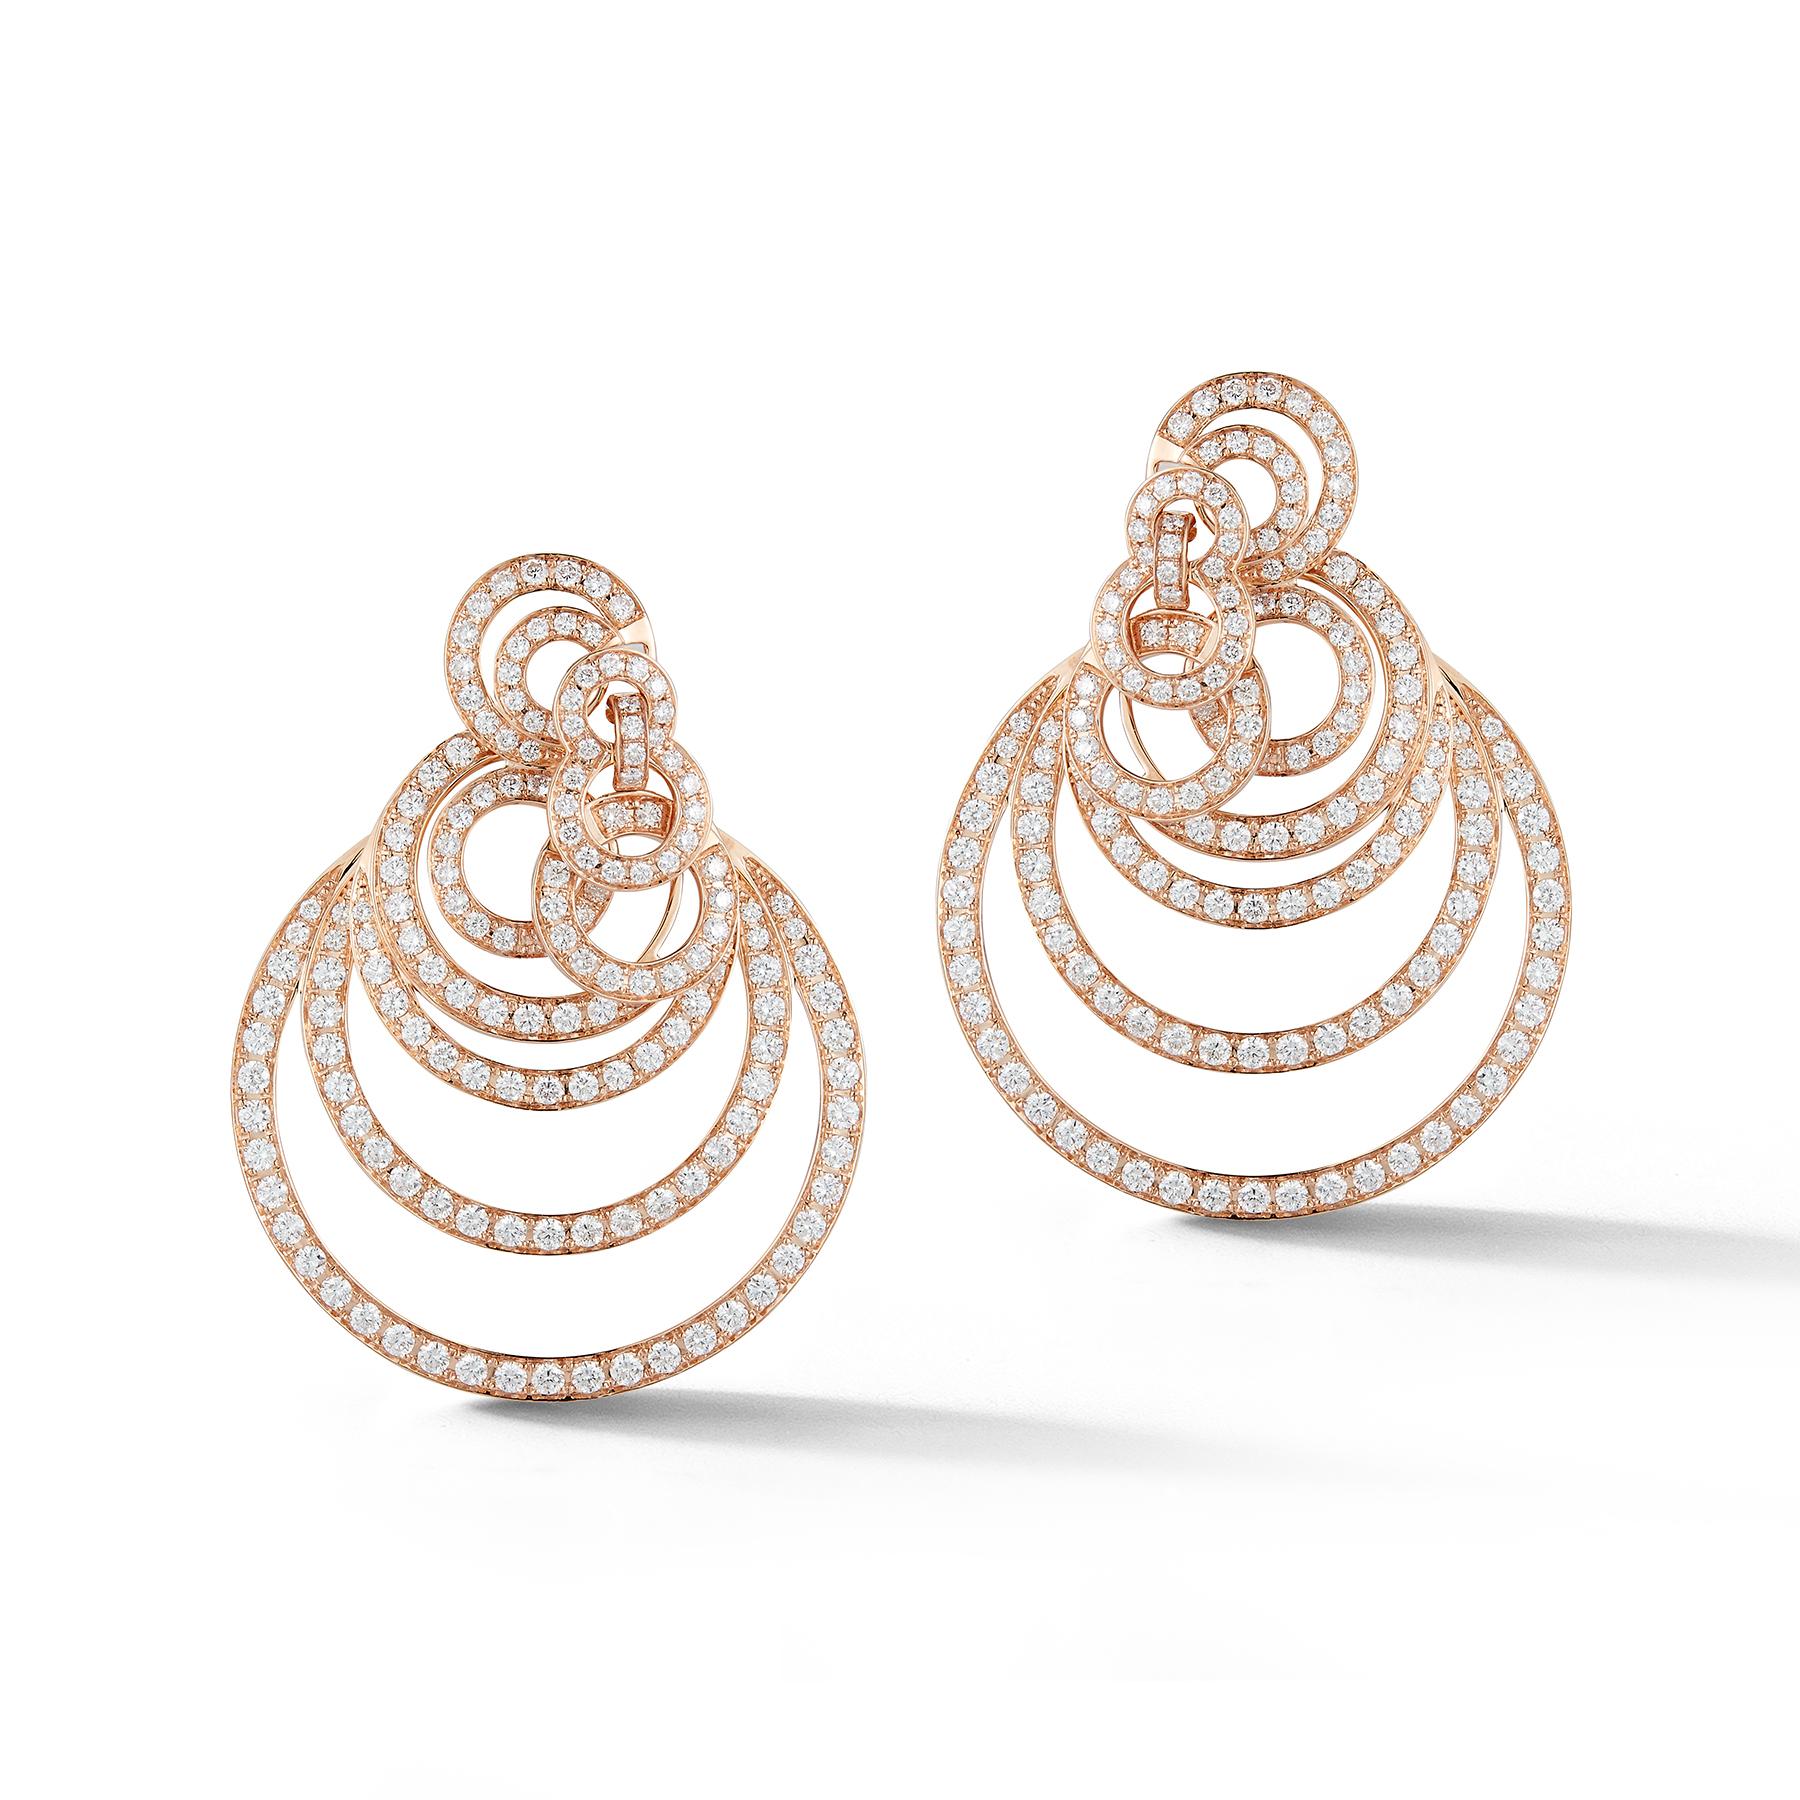 Round Cut Gorgeous Multi-Layered 18 Karat Gold Diamond Hoops Earrings weighing 2.86 Carat